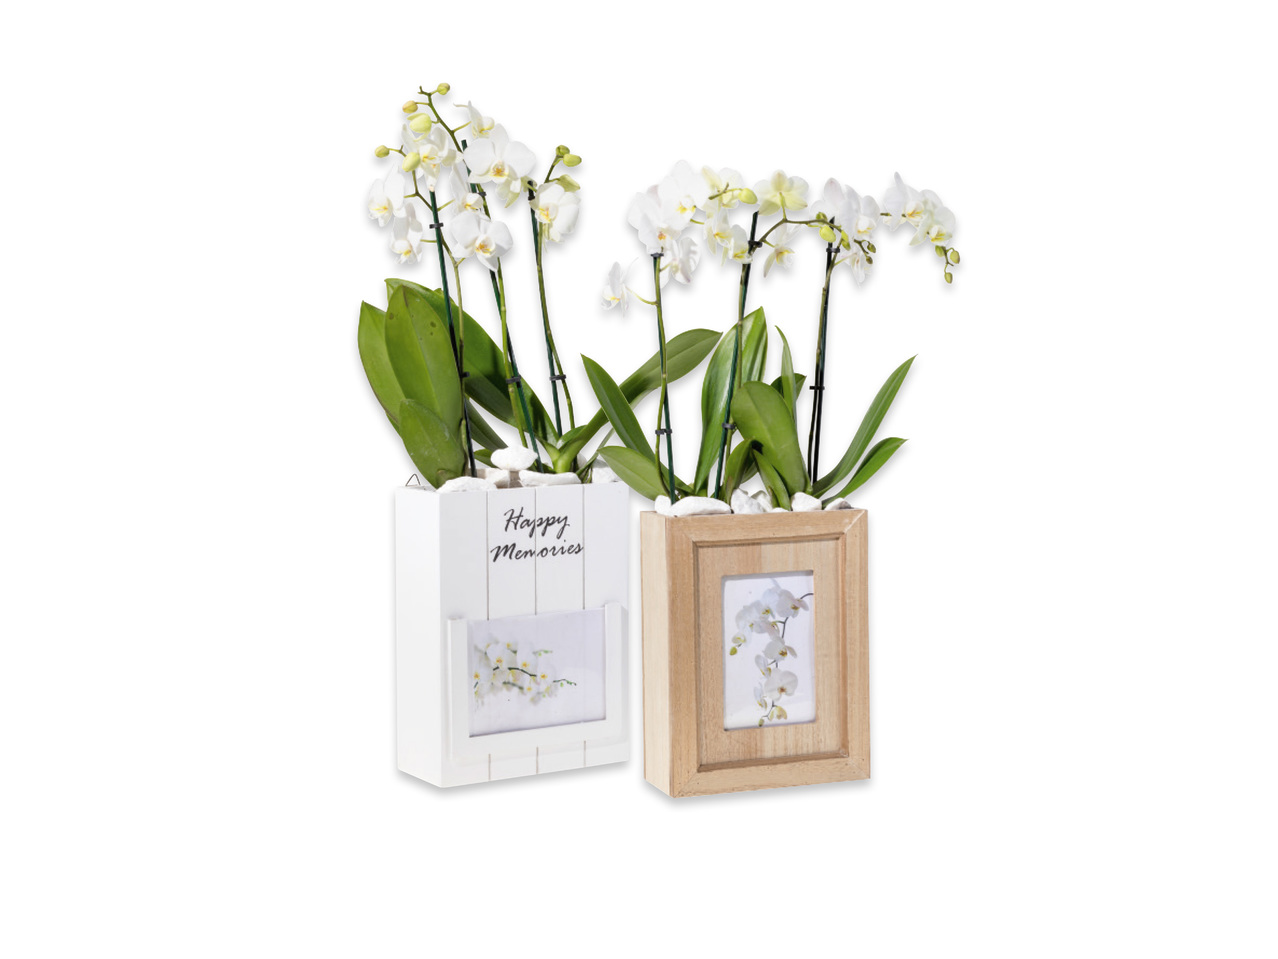 Orkidé i kruka med fotoram